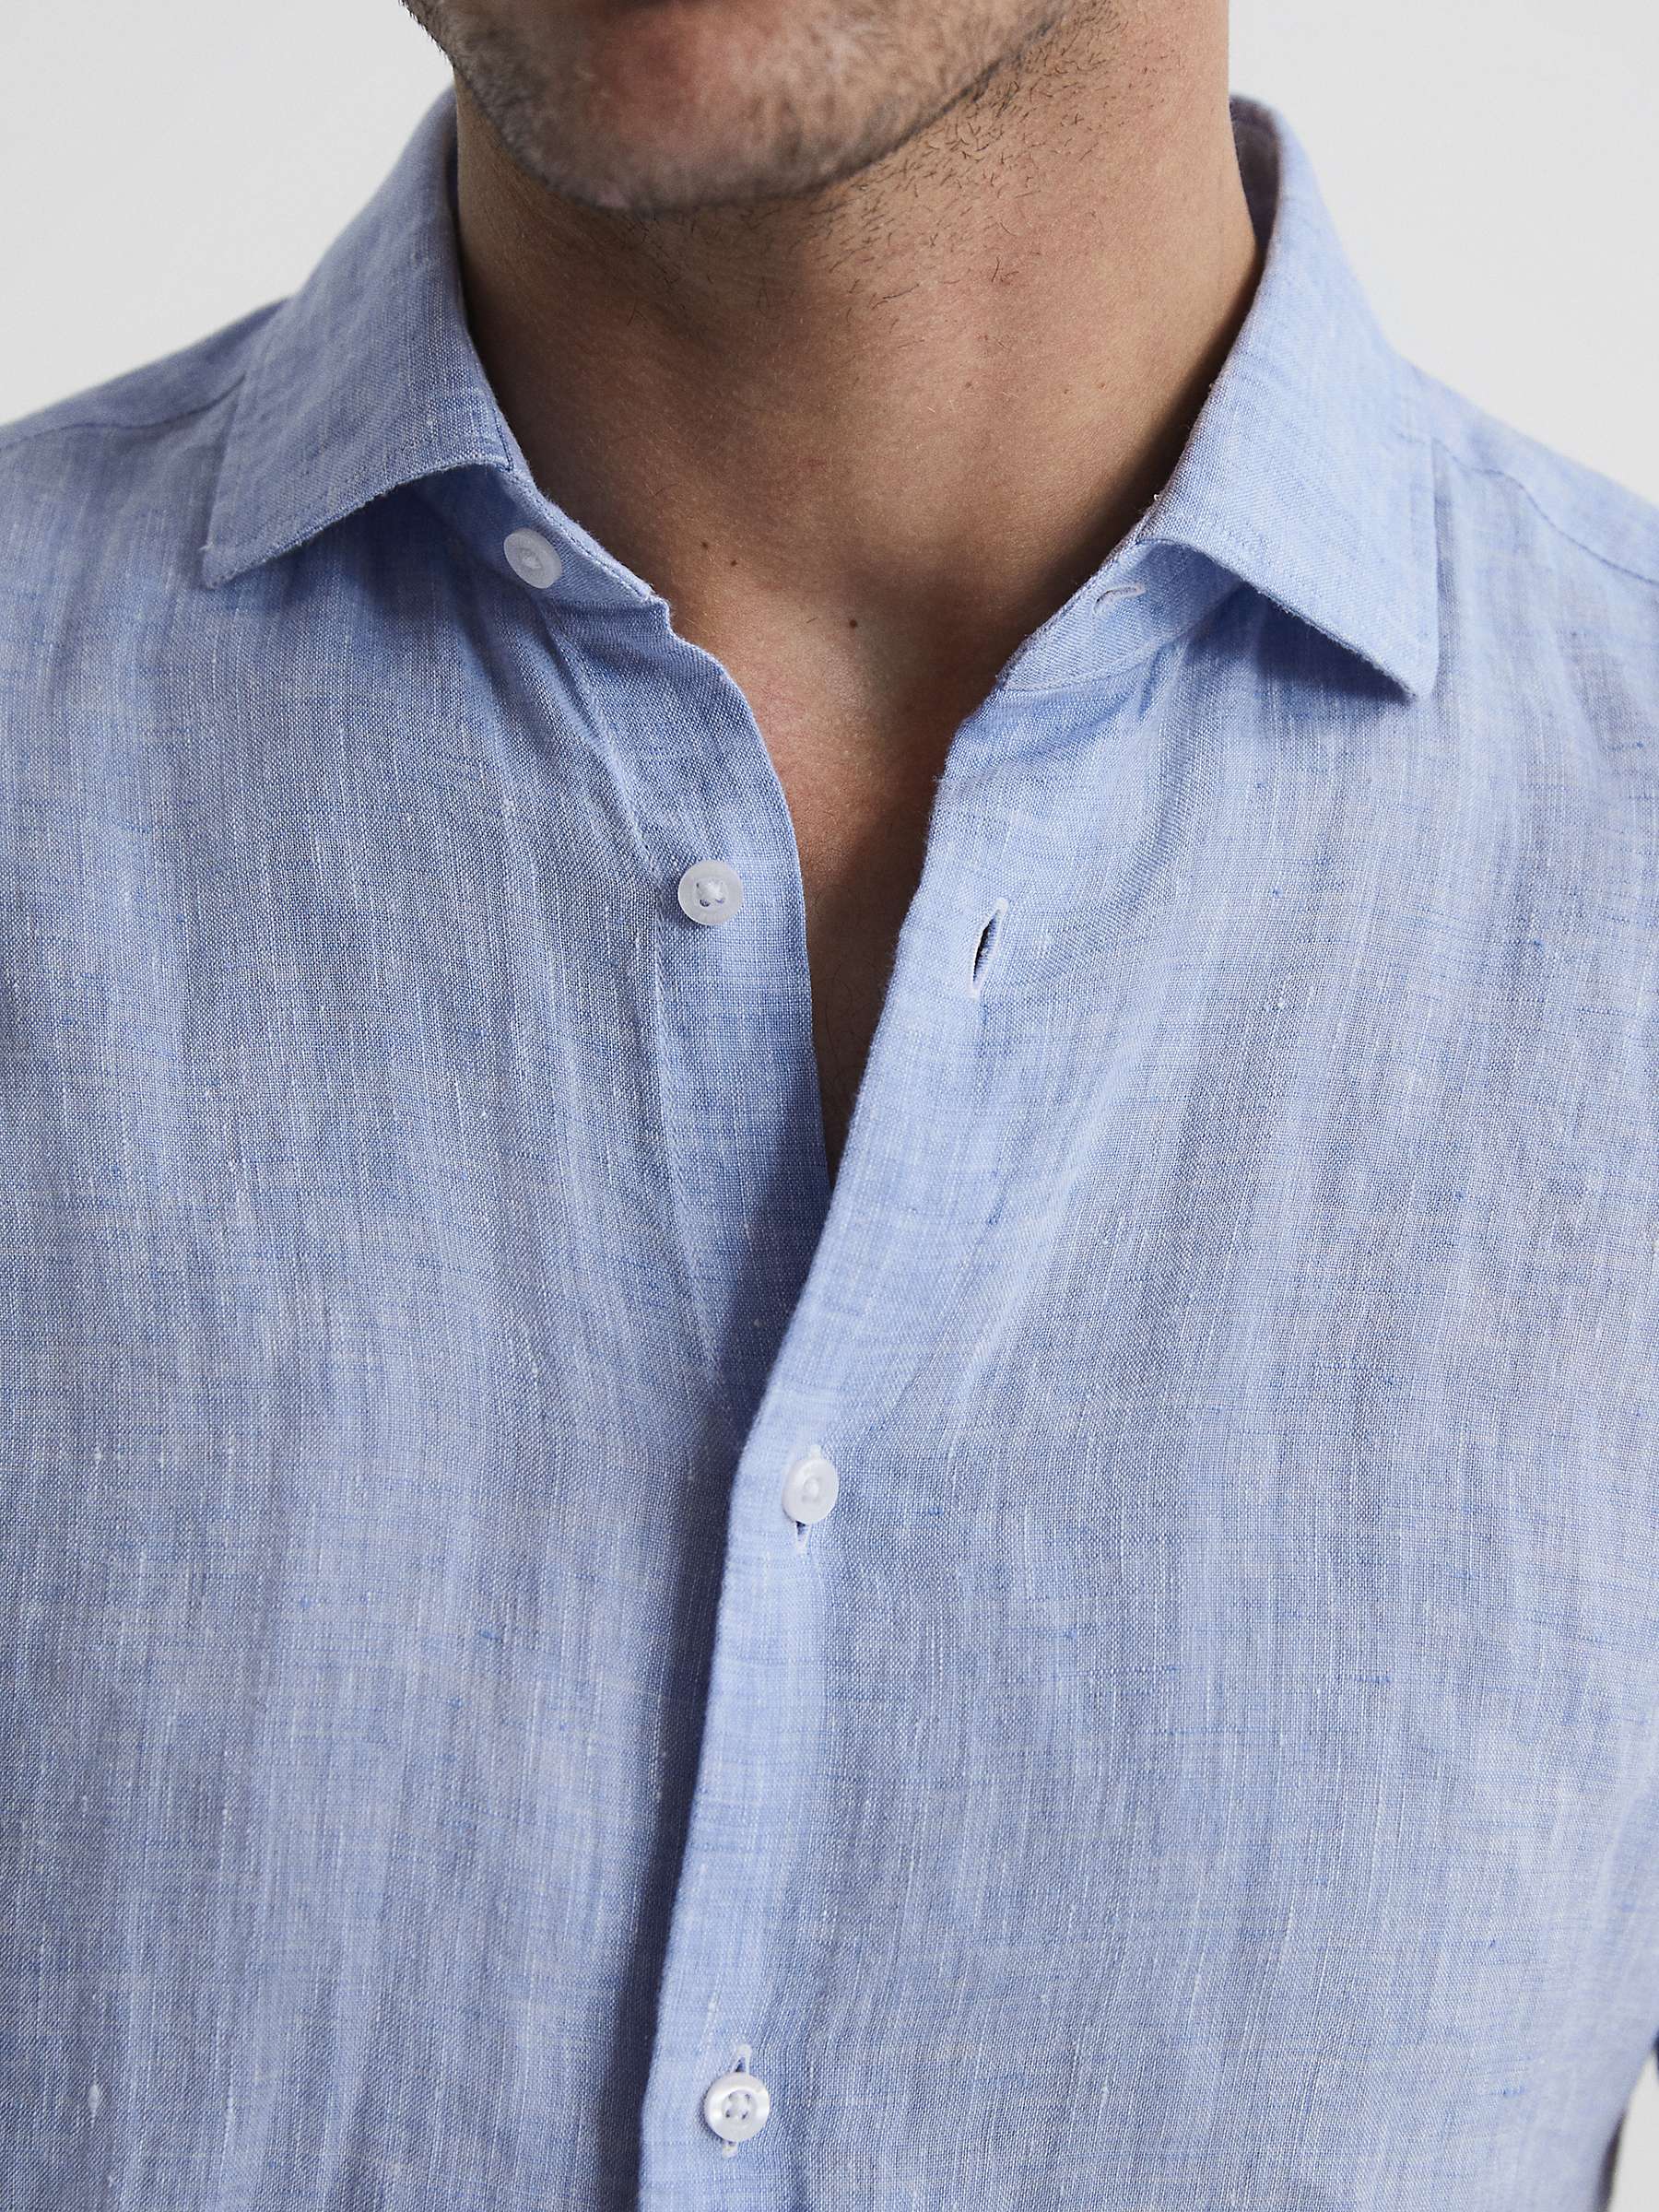 Reiss Holiday Linen Regular Fit Shirt, Soft Blue at John Lewis & Partners